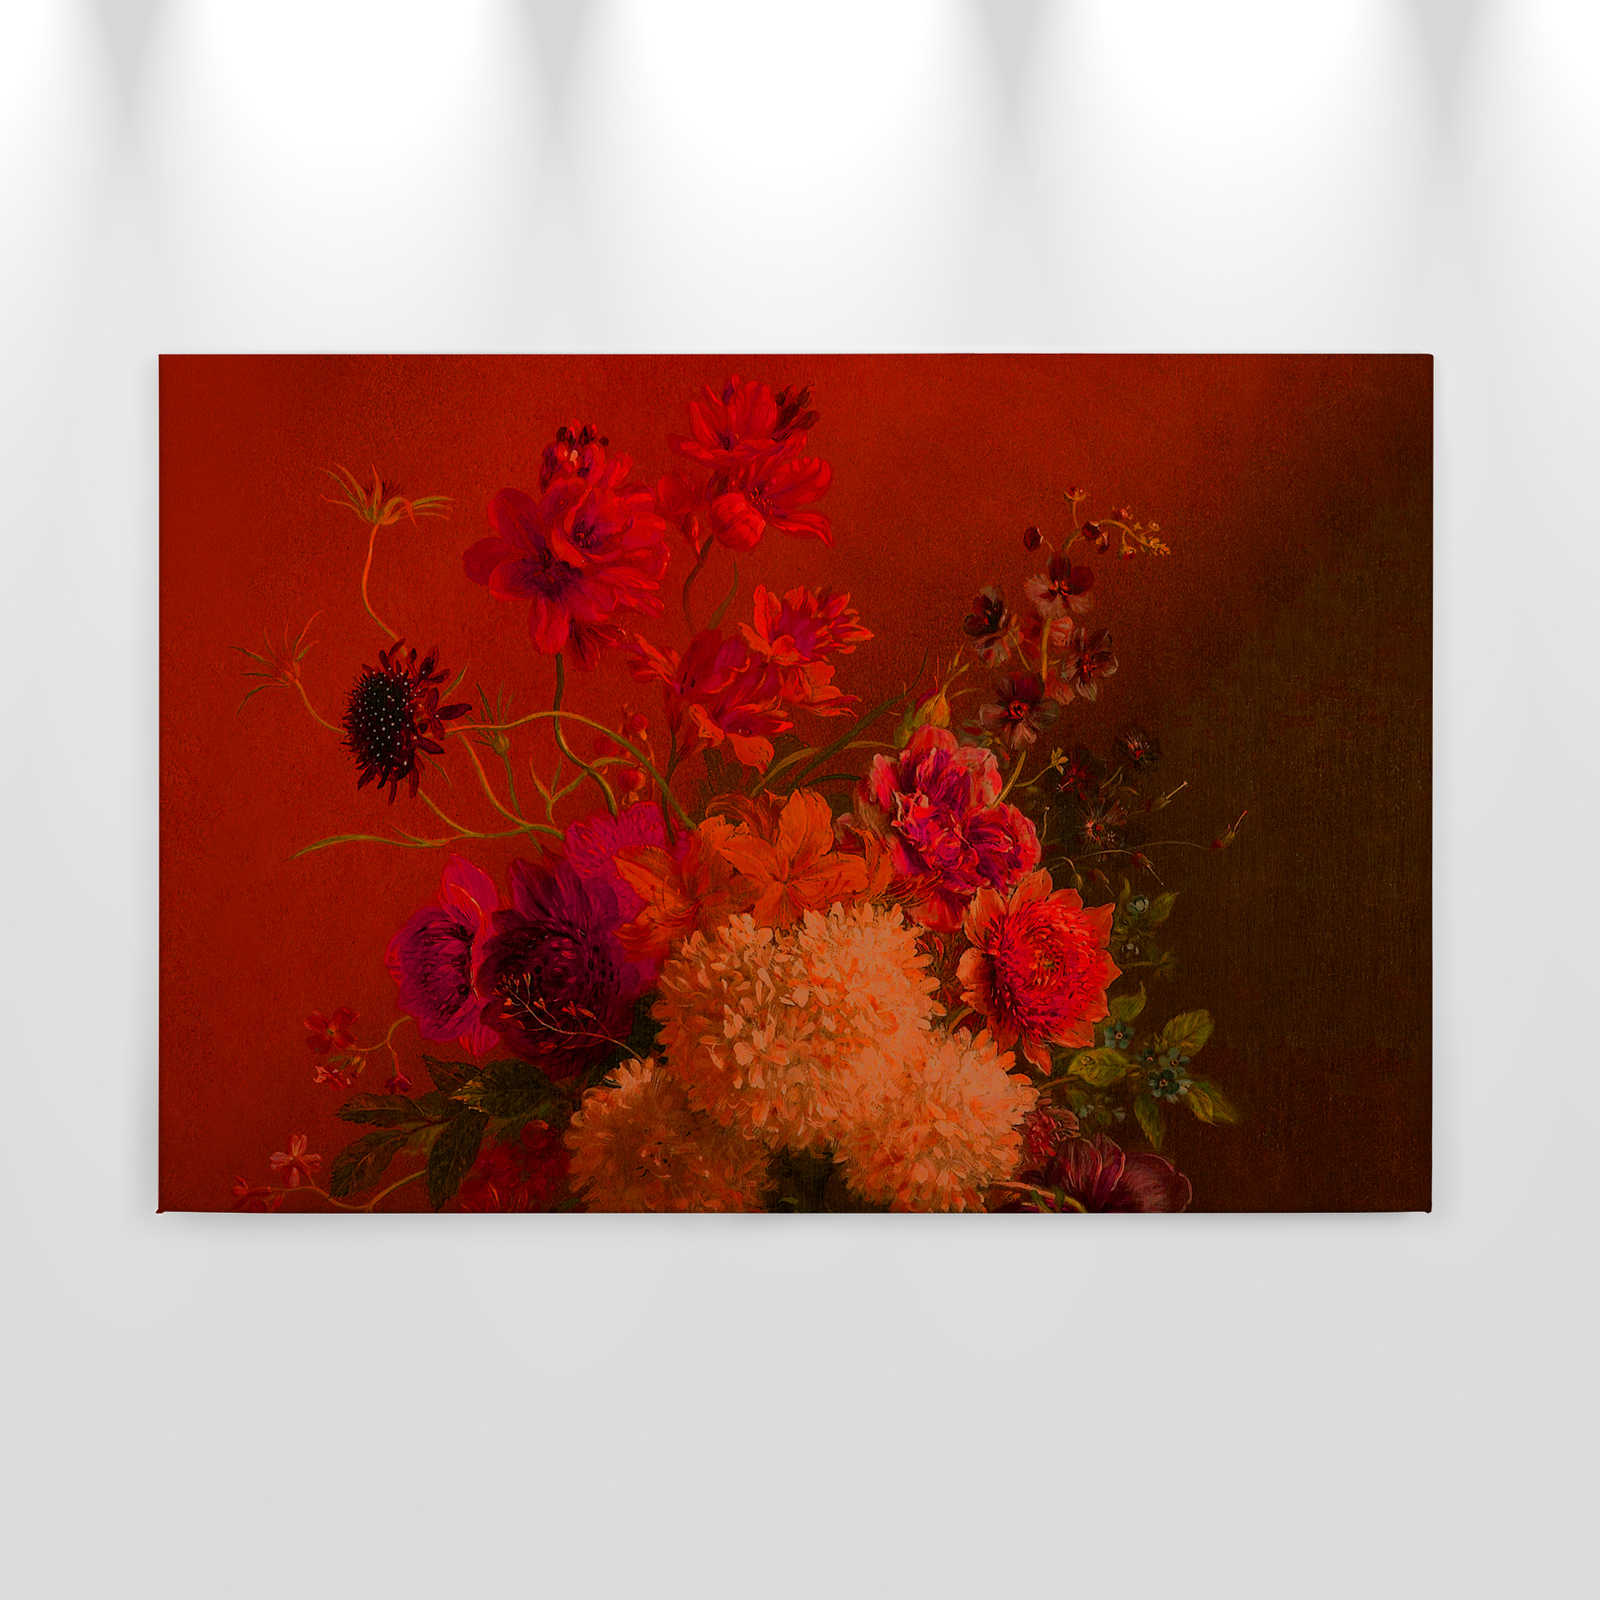             Pittura su tela al neon con fiori e natura morta - patel - 0,90 m x 0,60 m
        